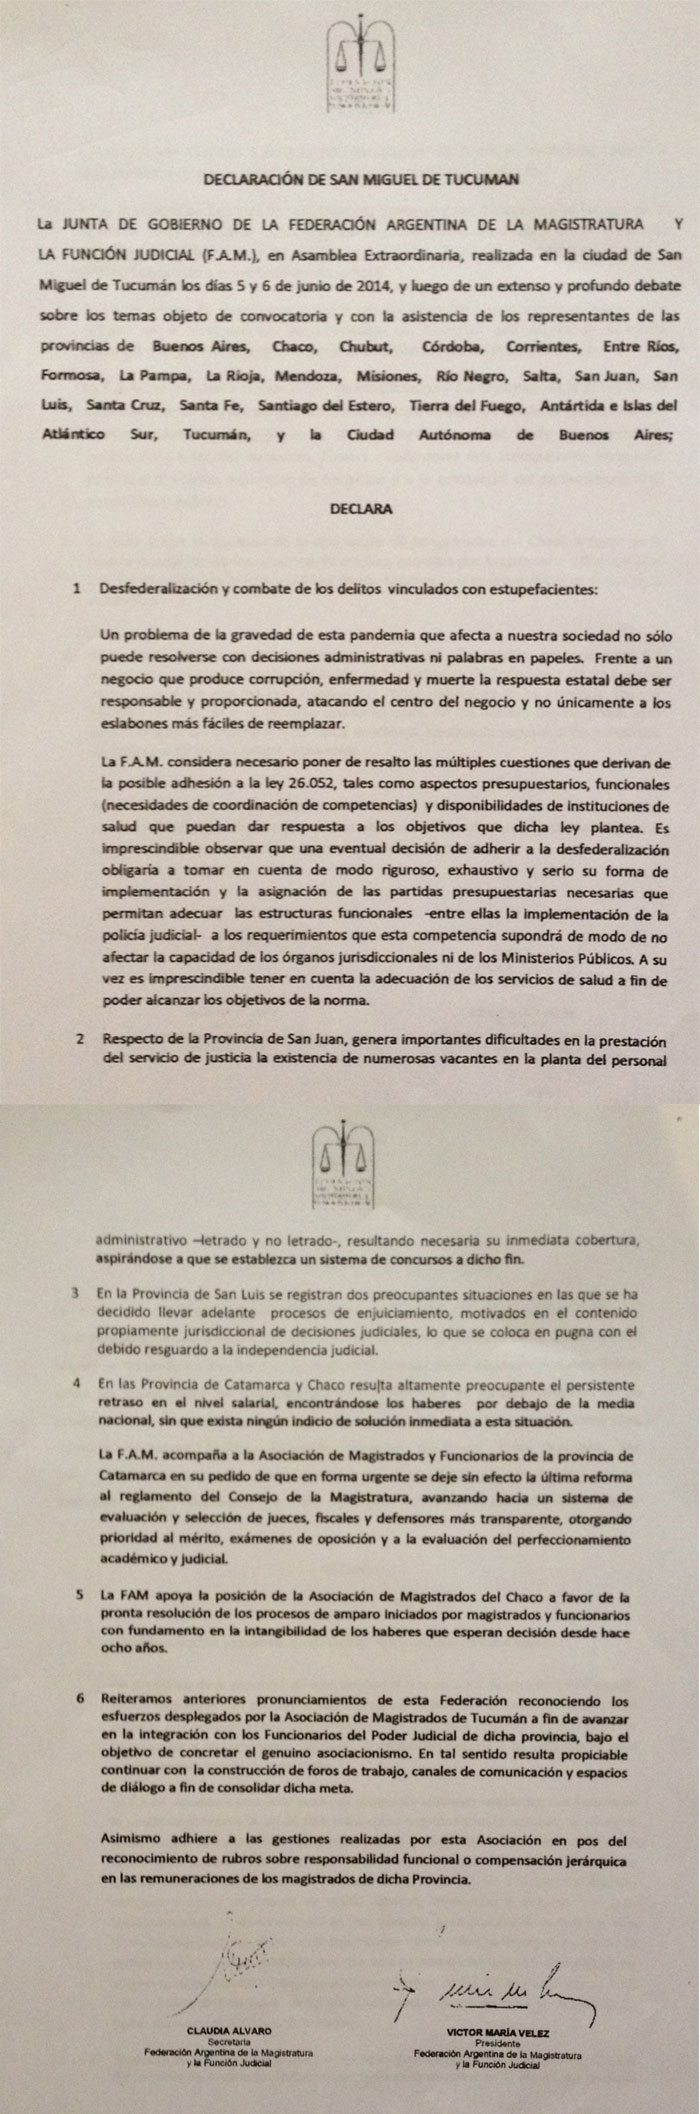 F.A.M. - Declaración de San Miguel de Tucumán sobre estupefacientes